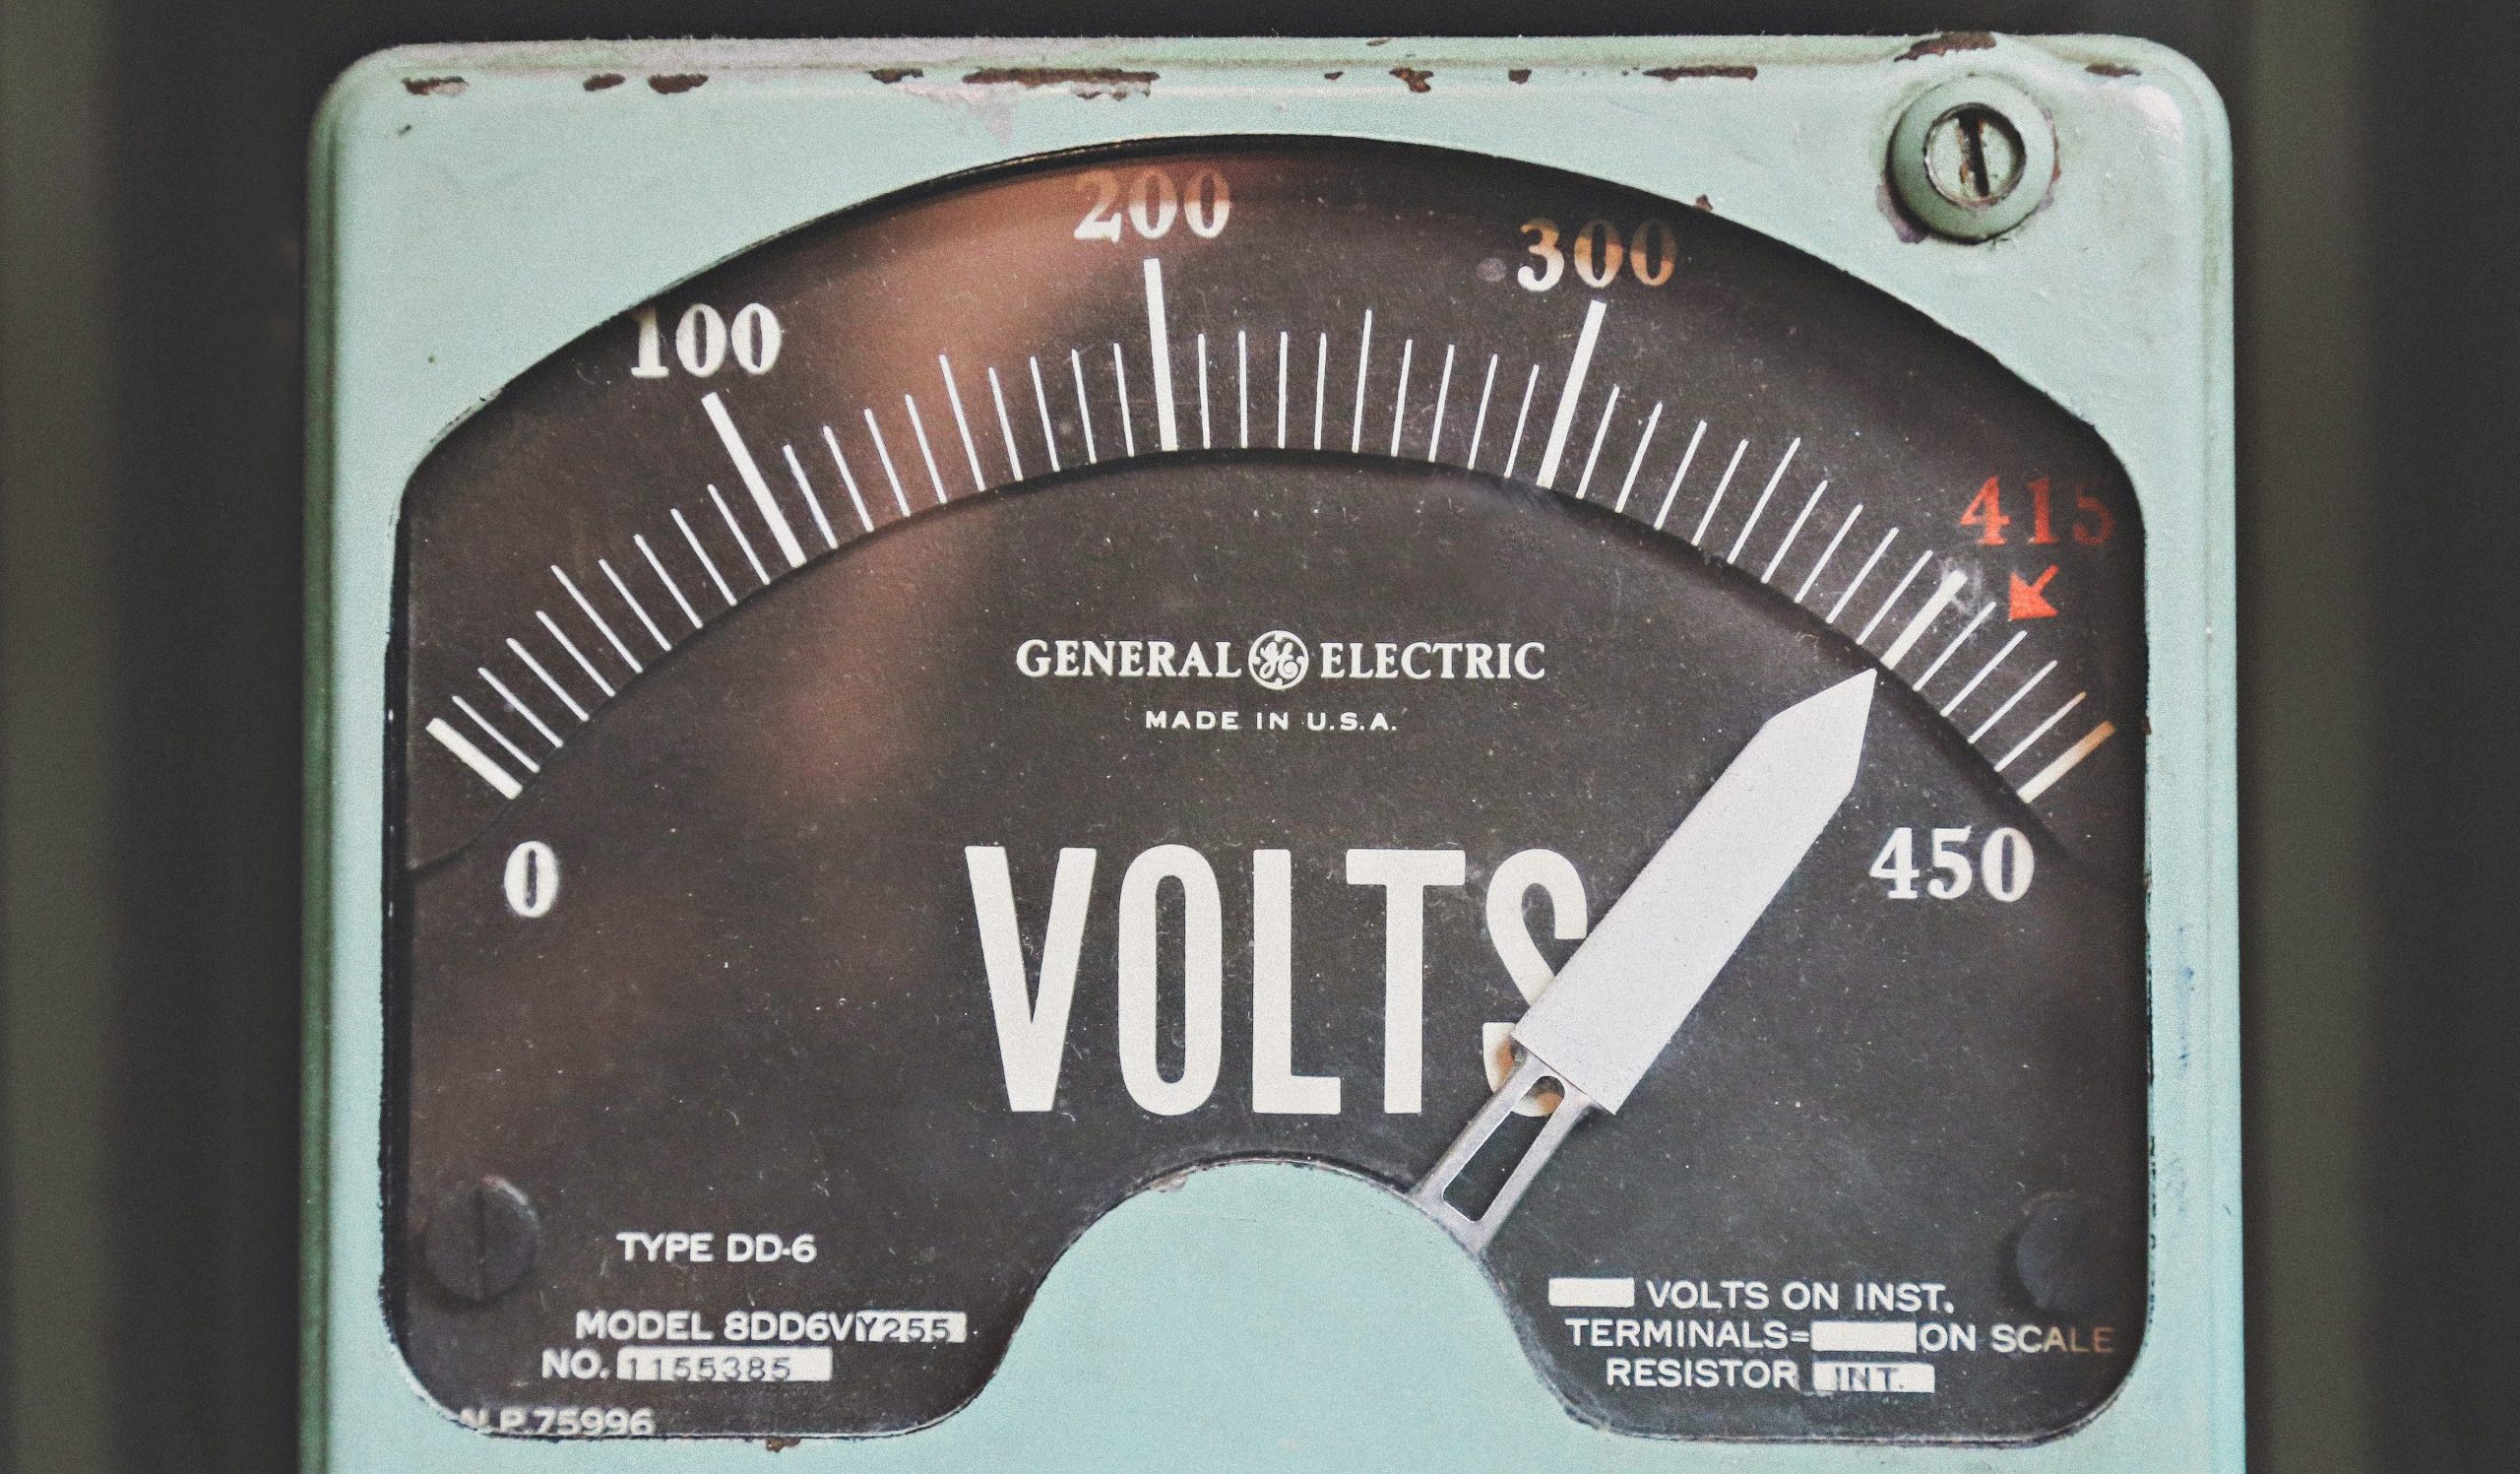 GE voltage measure